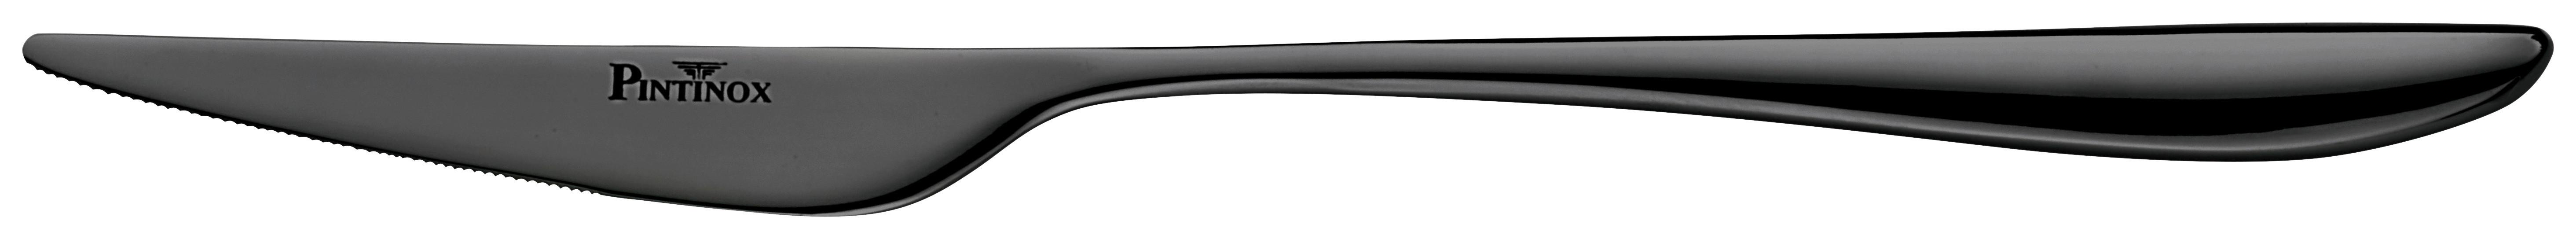 Messer Black aus Edelstahl - Schwarz, MODERN, Metall (23cm) - Premium Living